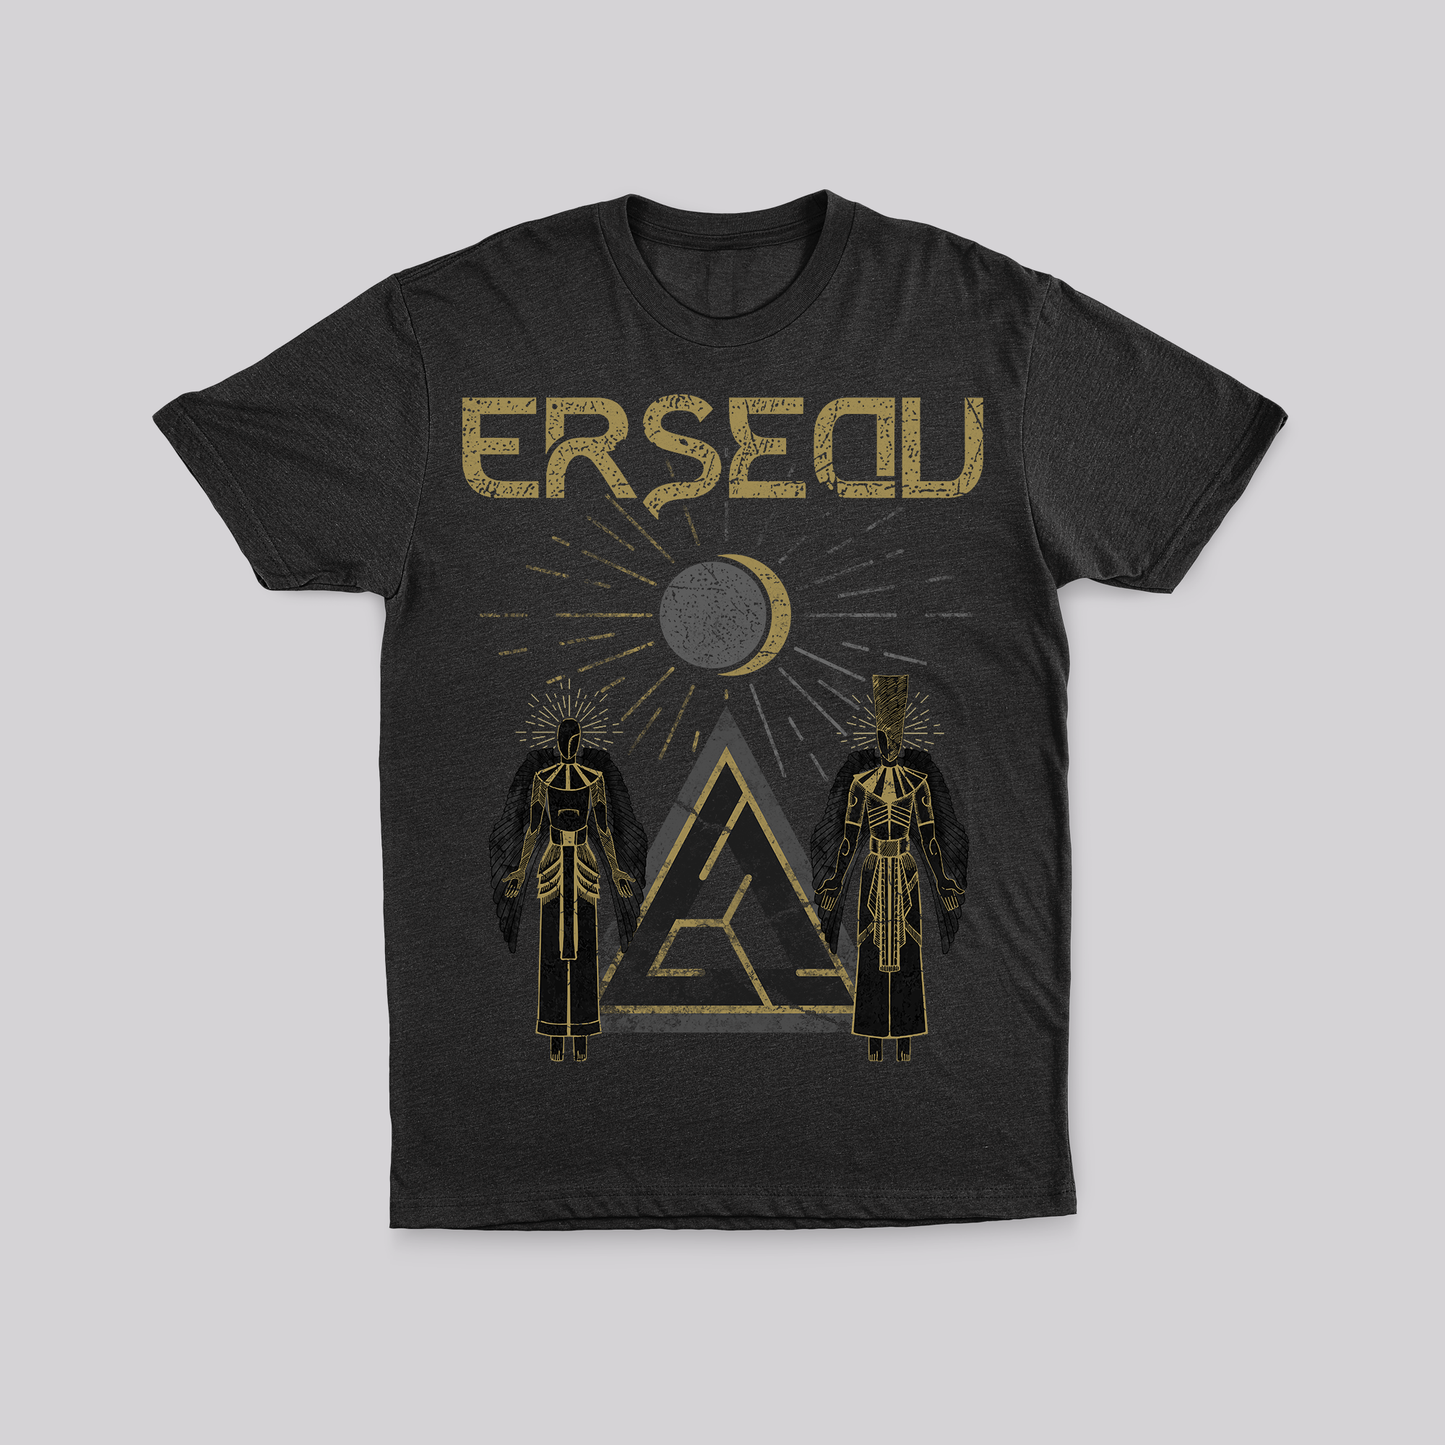 ERSEDU T-shirt